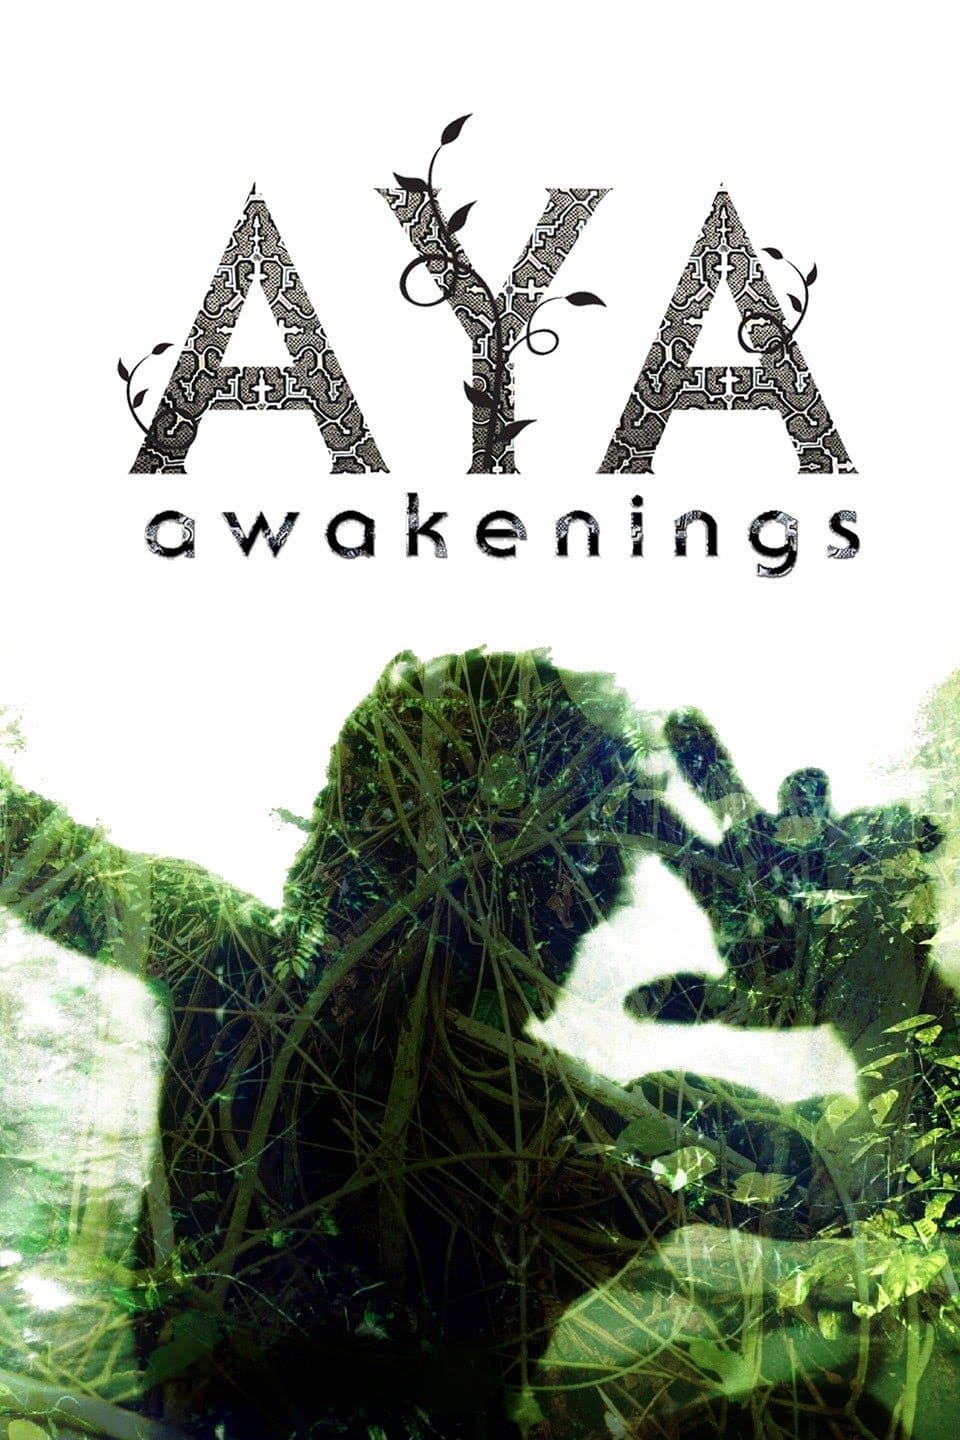 Aya: Awakenings